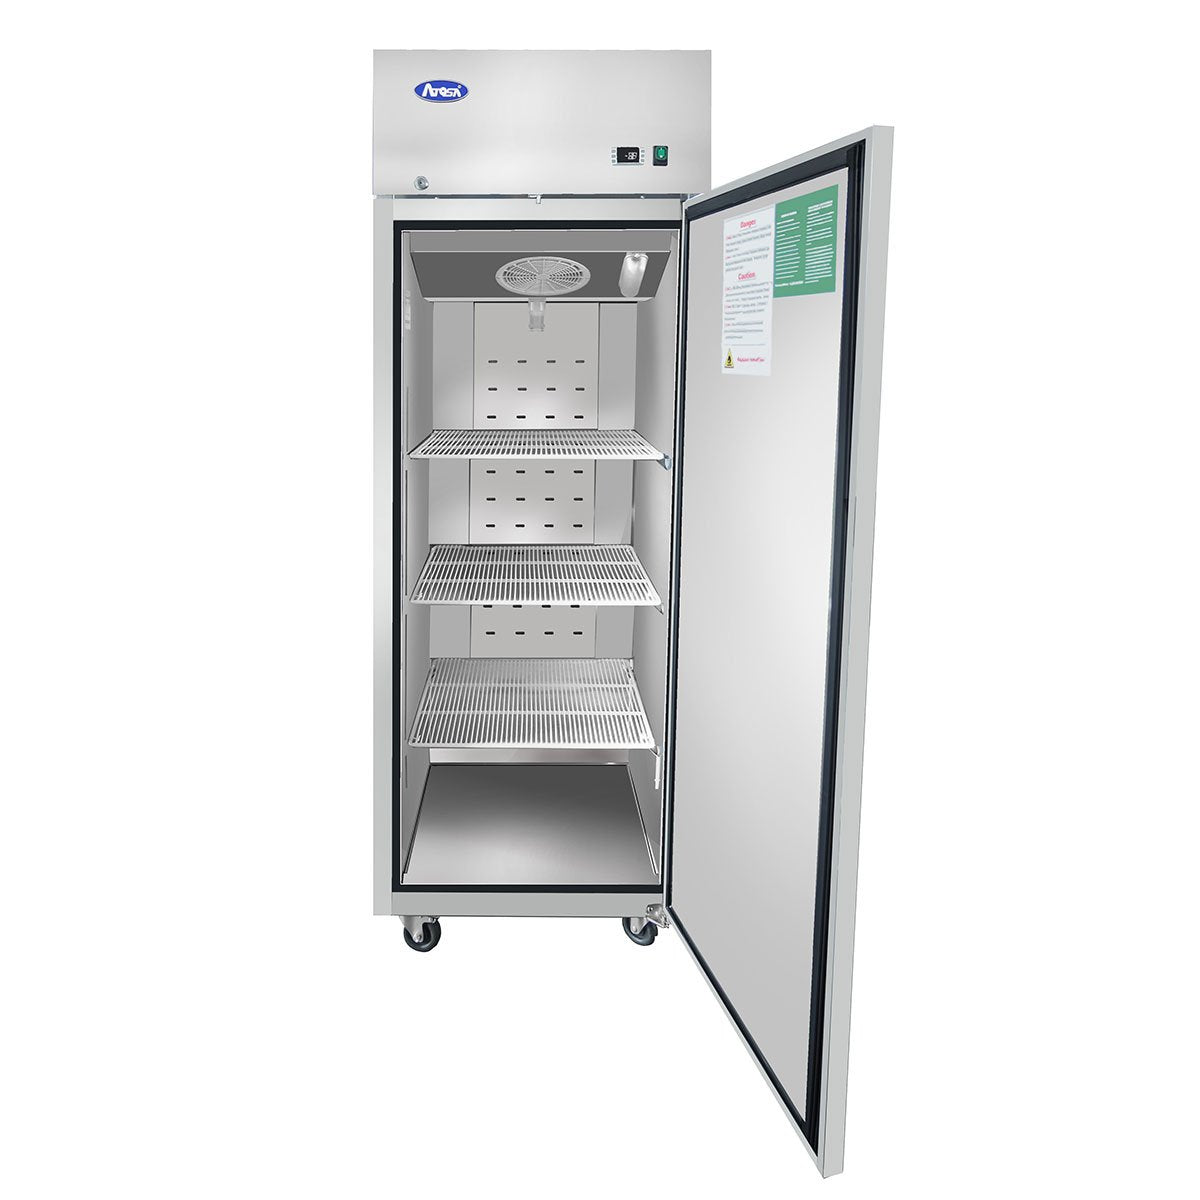 Atosa MBF8004GR Top Mount One Door Refrigerator